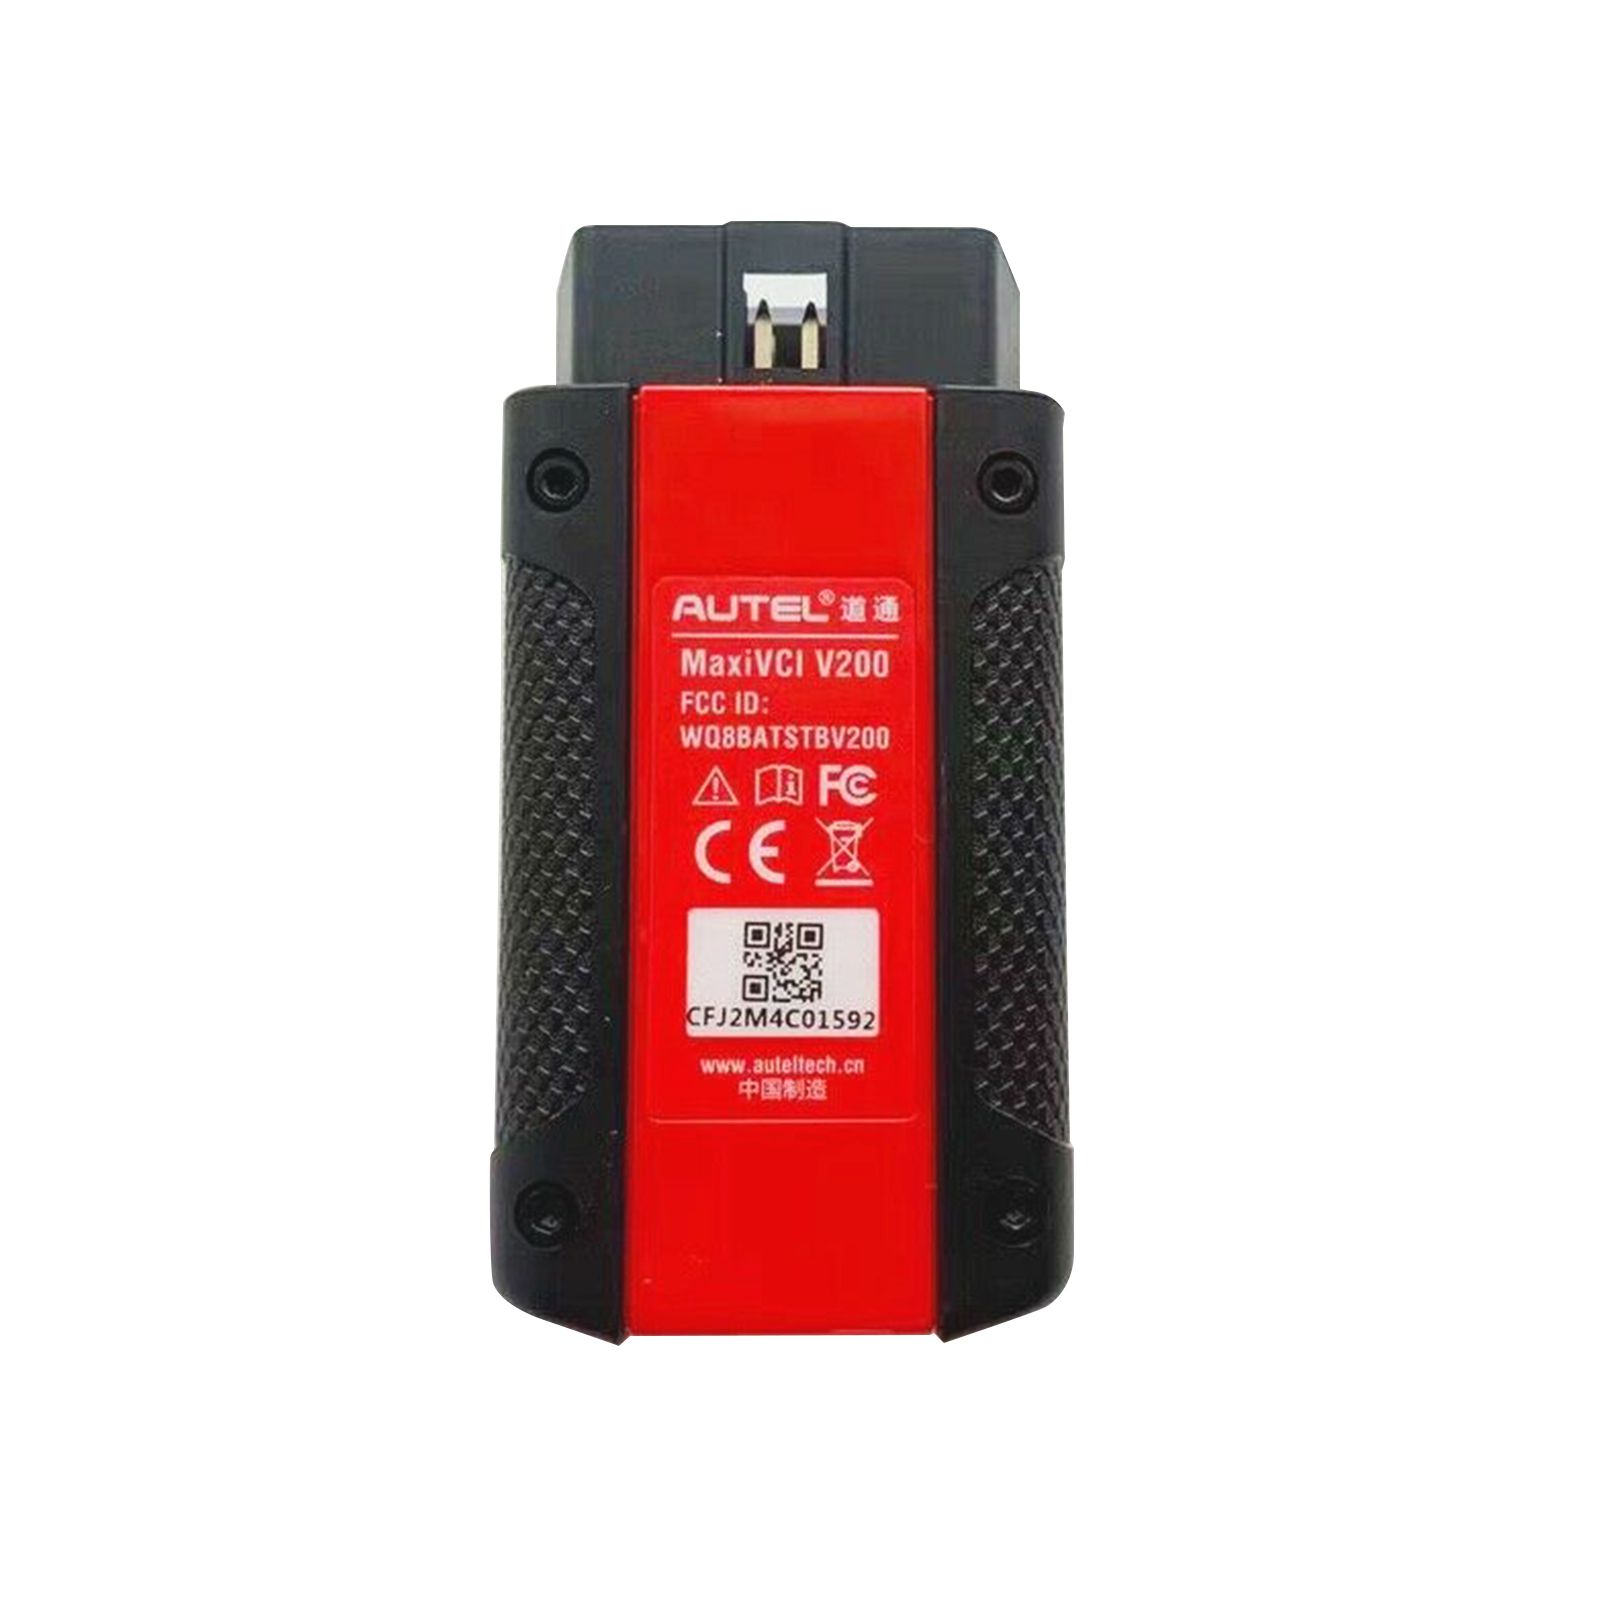 Autel MaxiVCI VCI 200 Bluetooth를 진단 태블릿 MS906 PRO ITS600K8과 함께 사용